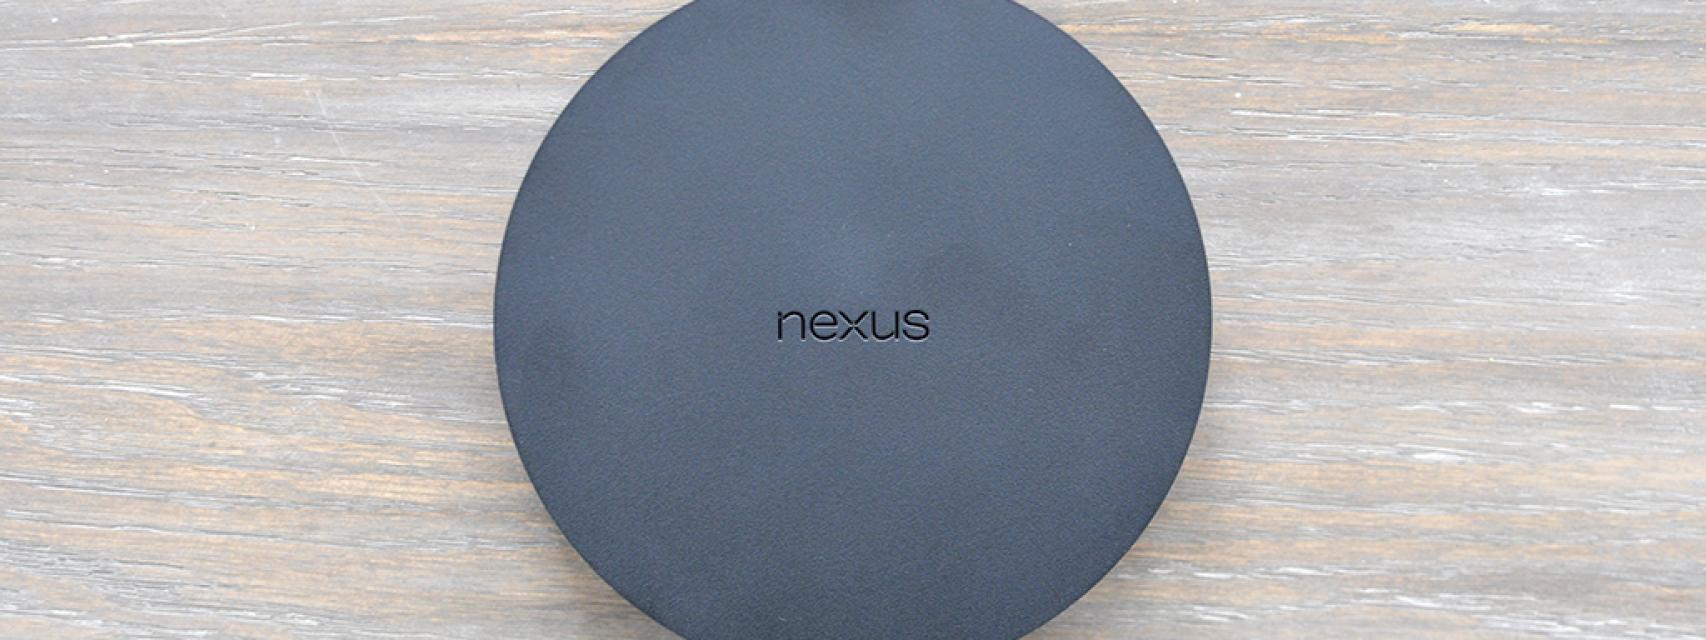 Nexus Player, análisis y experiencia de uso